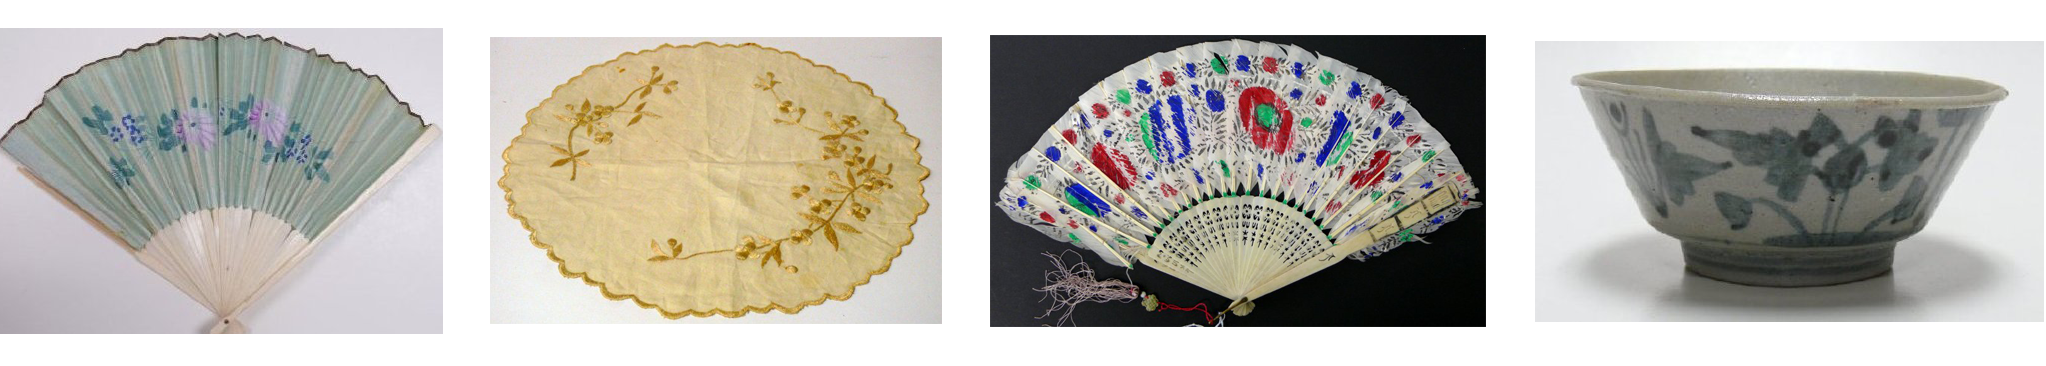 Quatre objets (éventails, nappe et bol de riz) provenant de la collection des Musée et archives de Chilliwack 